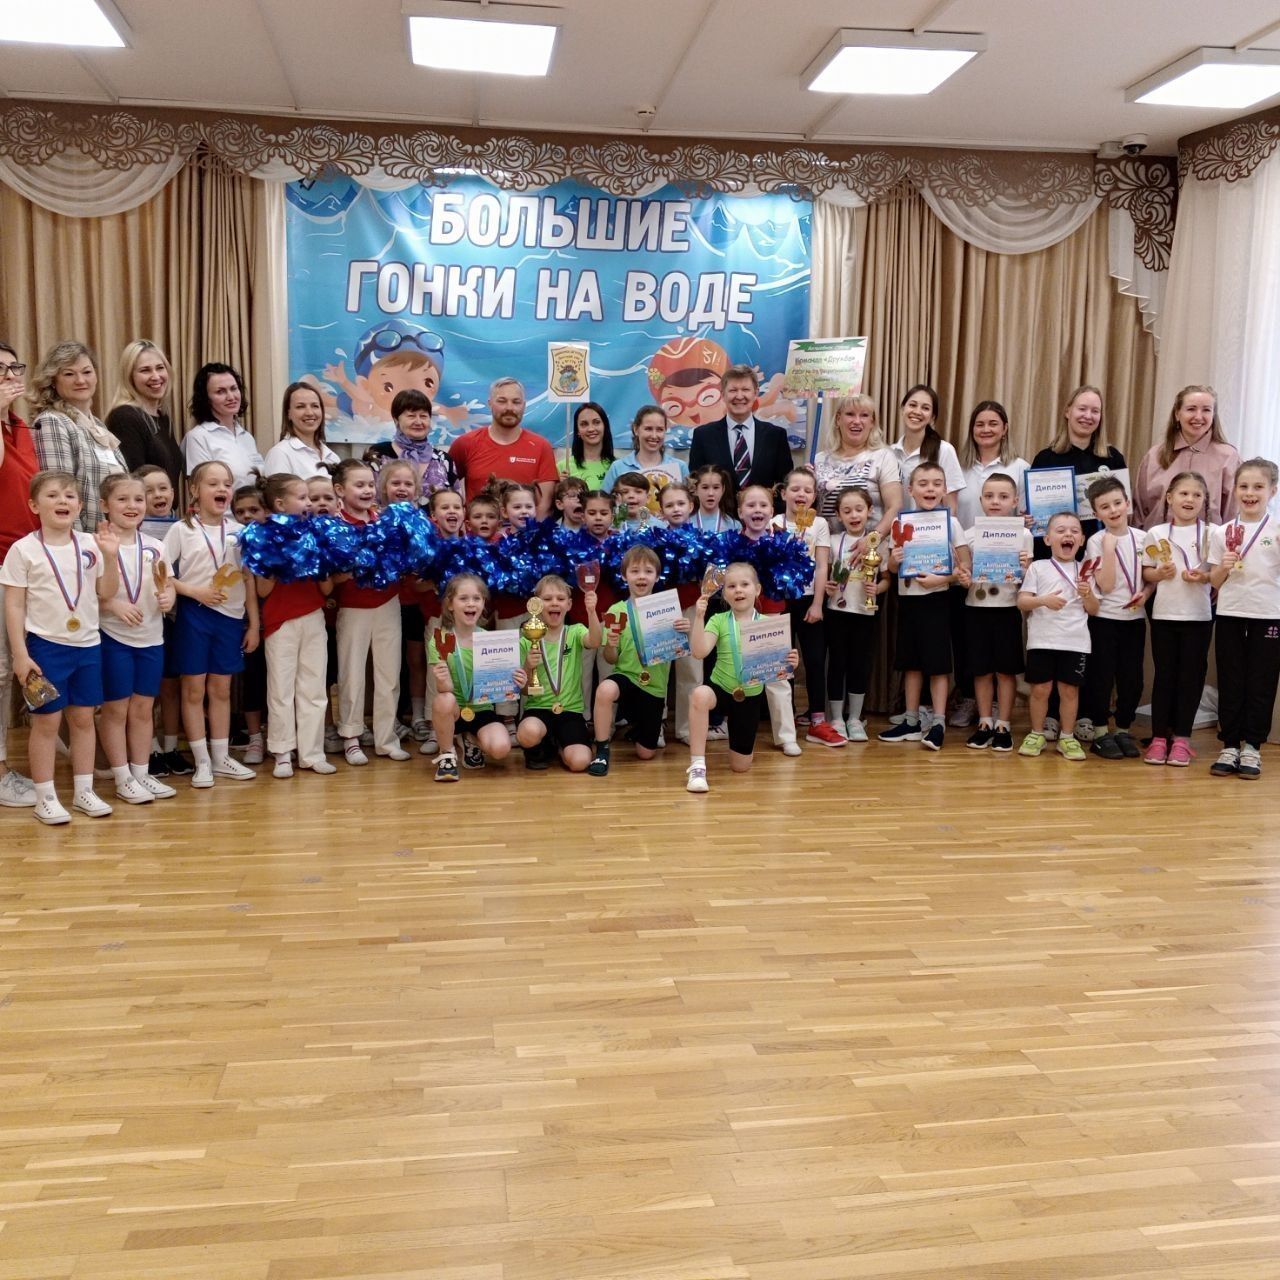 Большие гонки на воде: праздник спорта для детей прошел в Петроградском районе